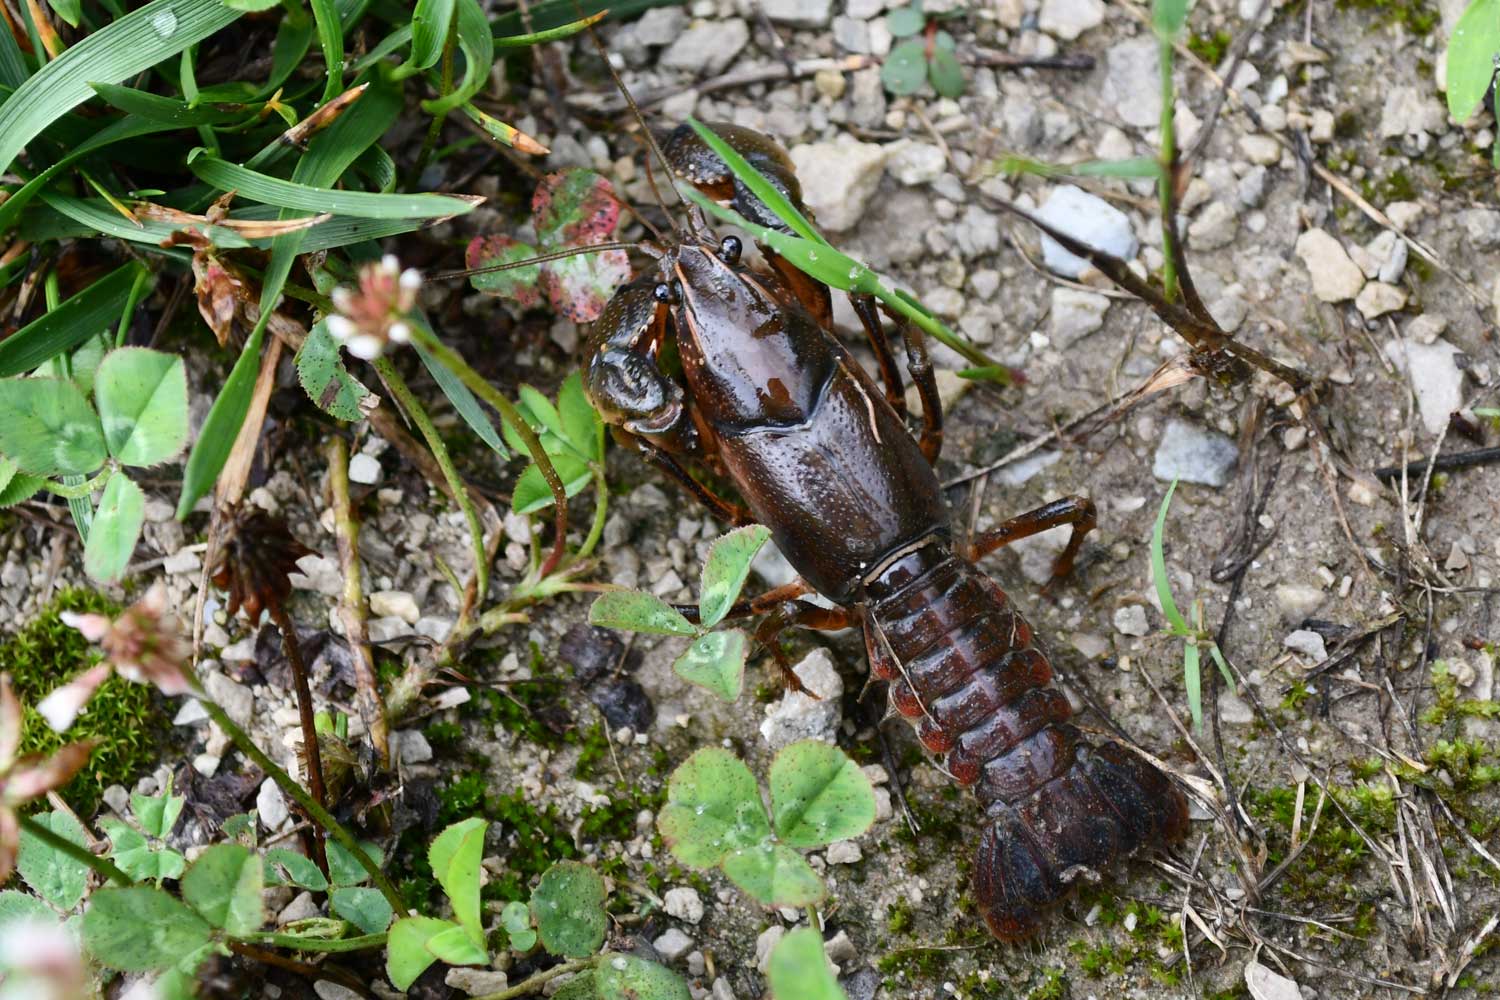 Crayfish on a limestone trail near grass.